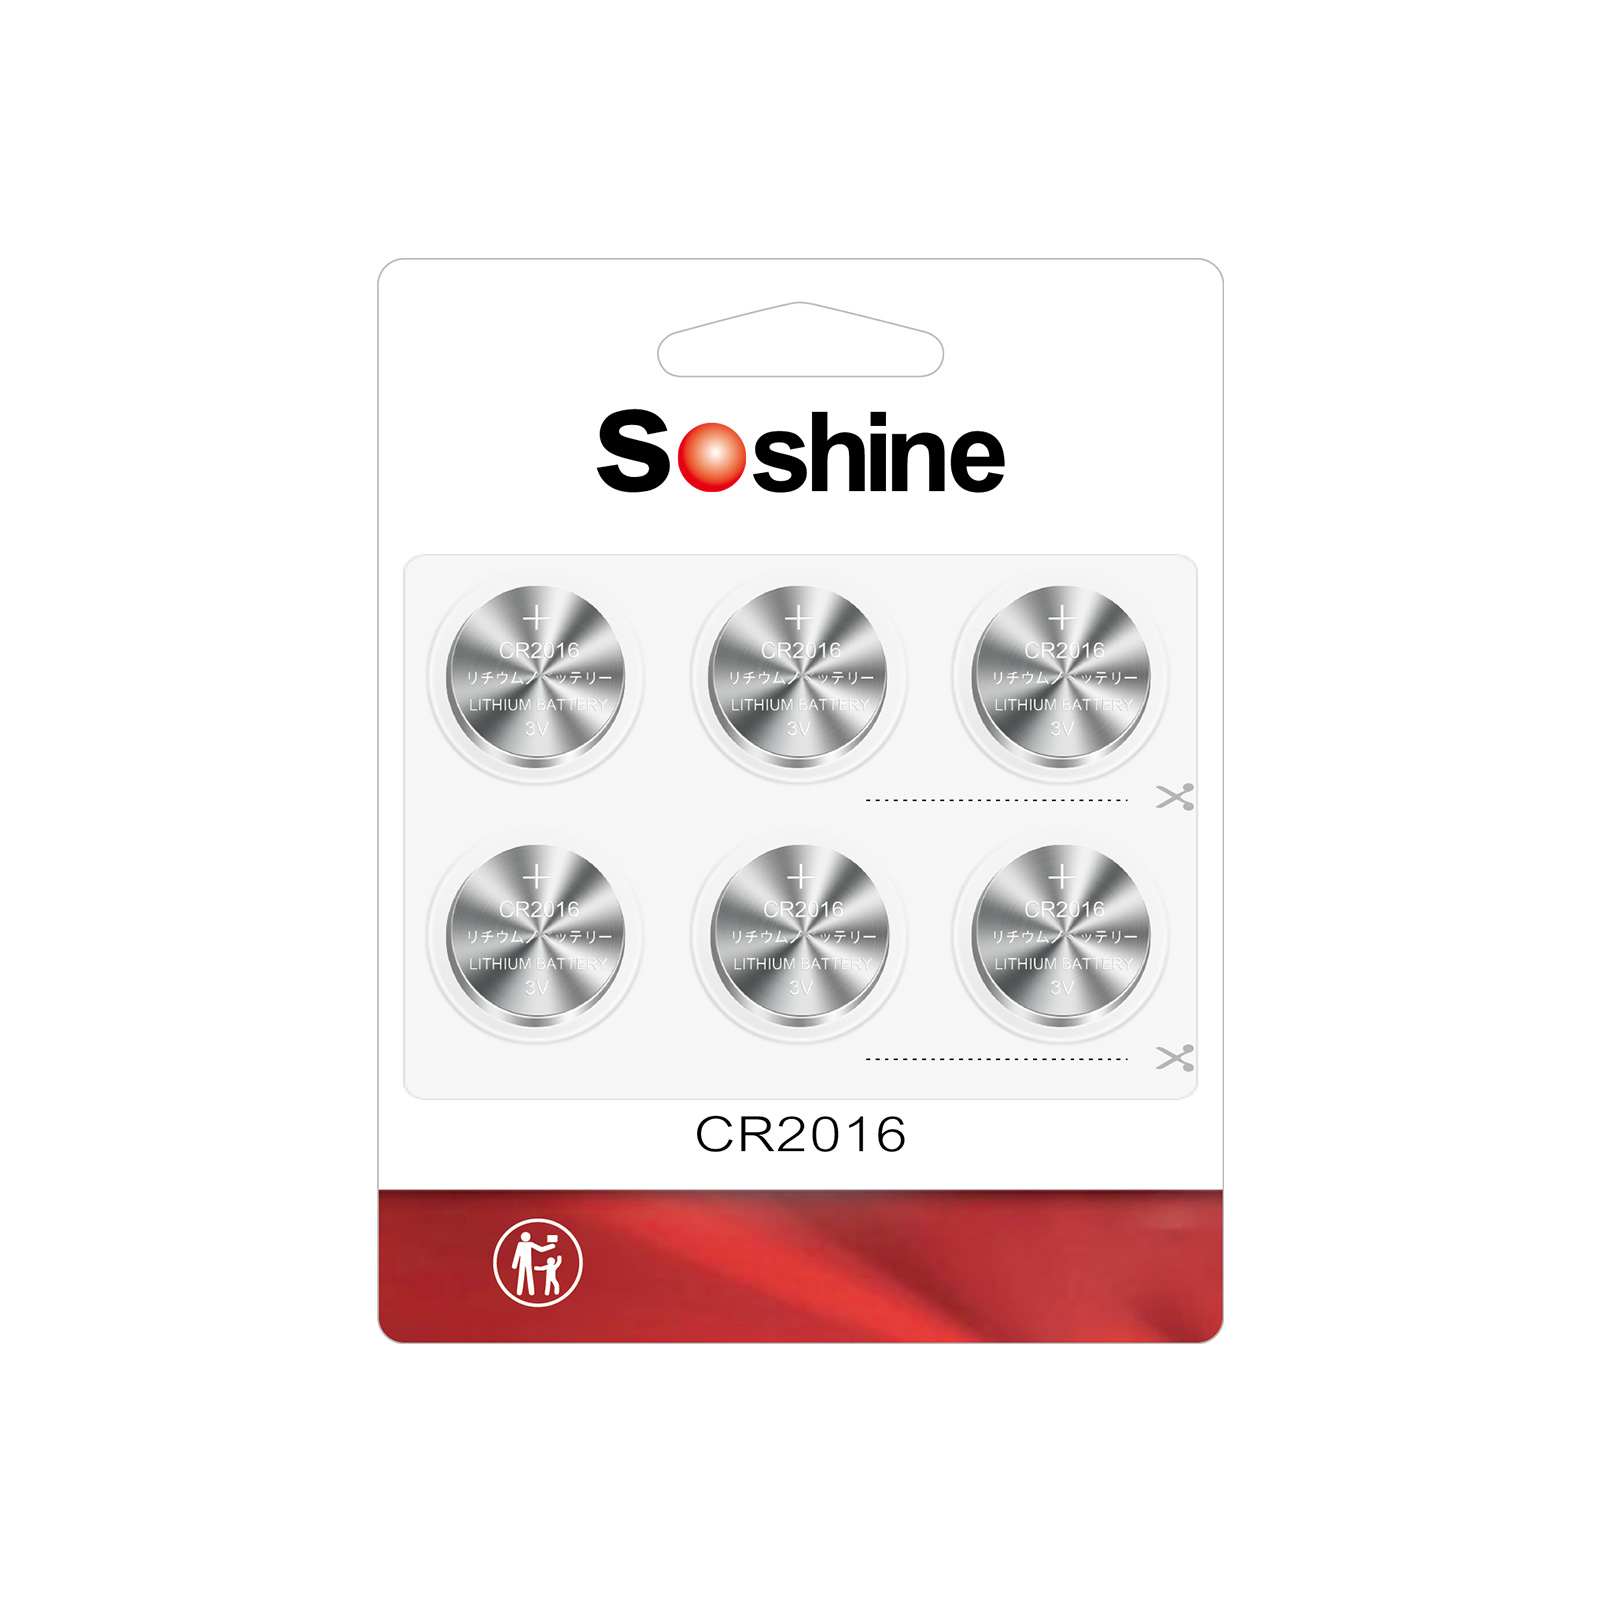 Soshine CR2016 Battery CR2016 Lithium 3v (1 Pack of 6)